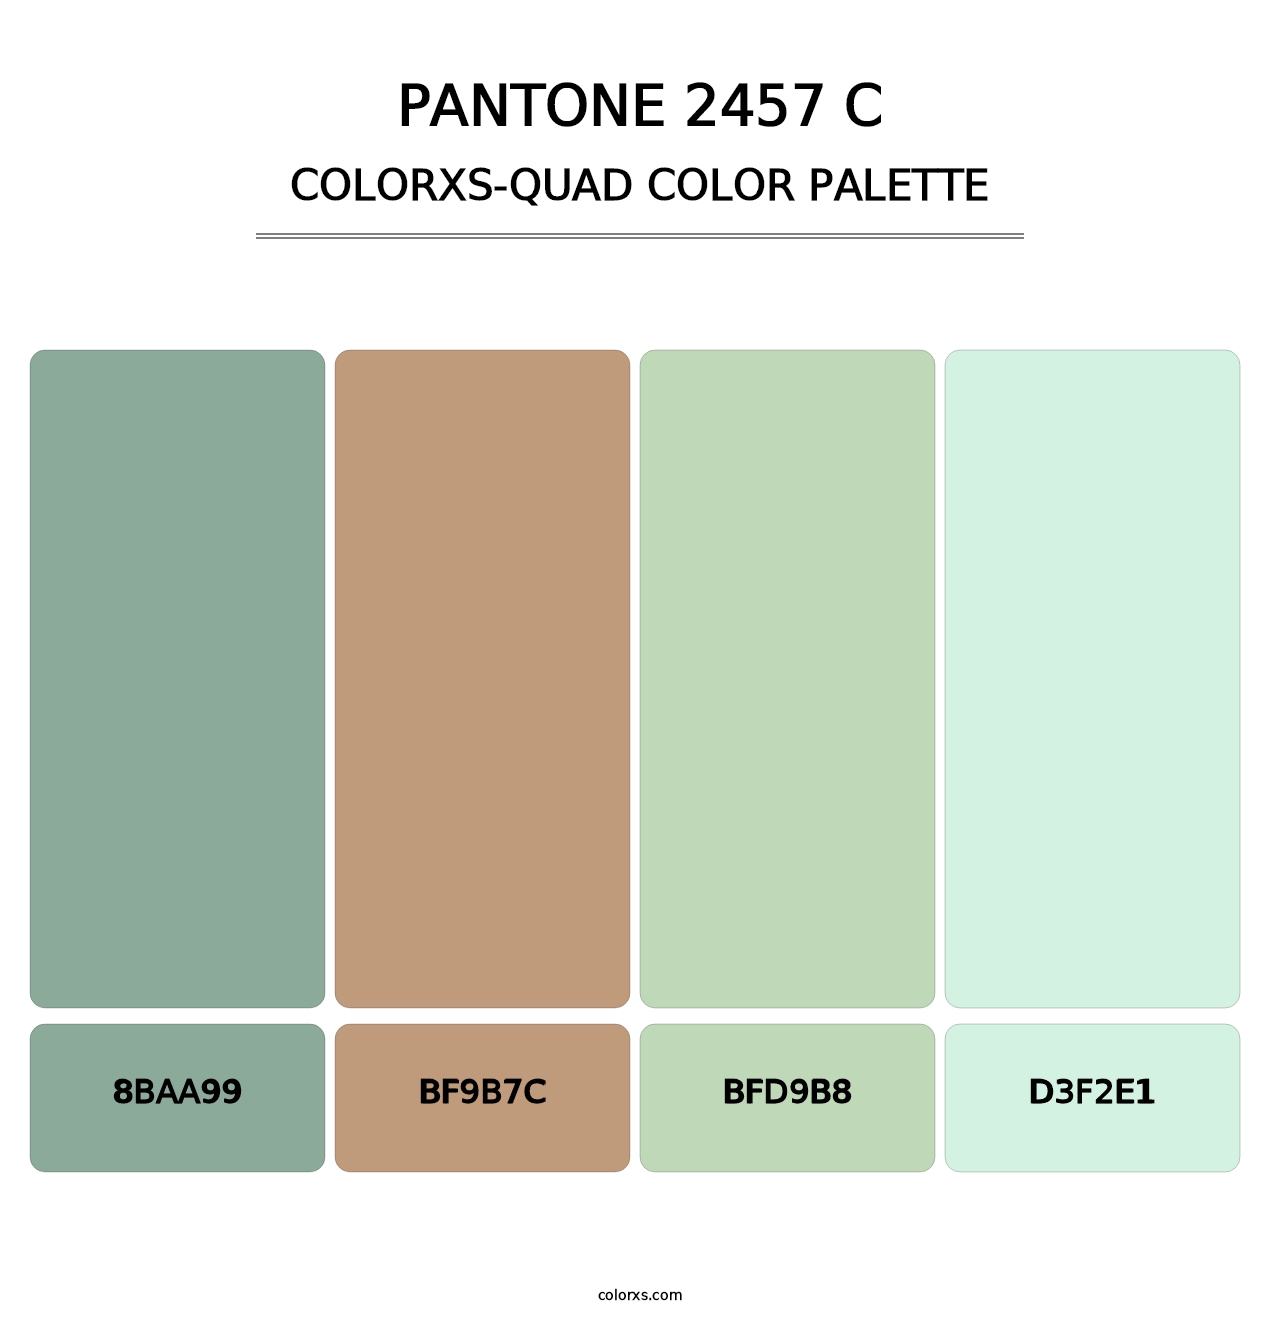 PANTONE 2457 C - Colorxs Quad Palette